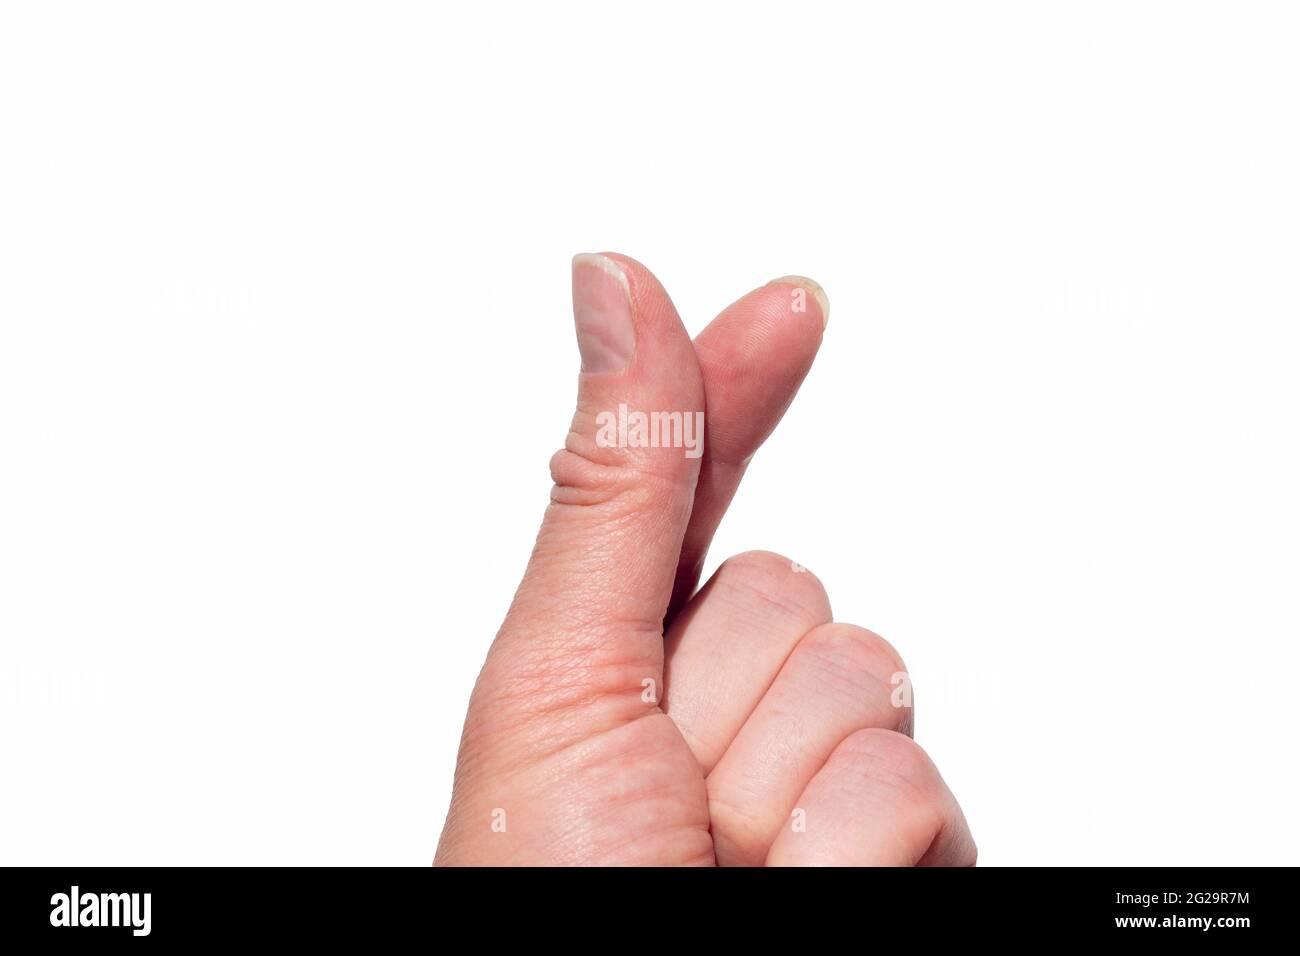 Une main faisant une forme de coeur avec deux doigts sur un fond blanc  isolé. Symbole coréen de l'amour avec les doigts. Cœur du doigt. Mini-main  en forme de coeur Photo Stock 